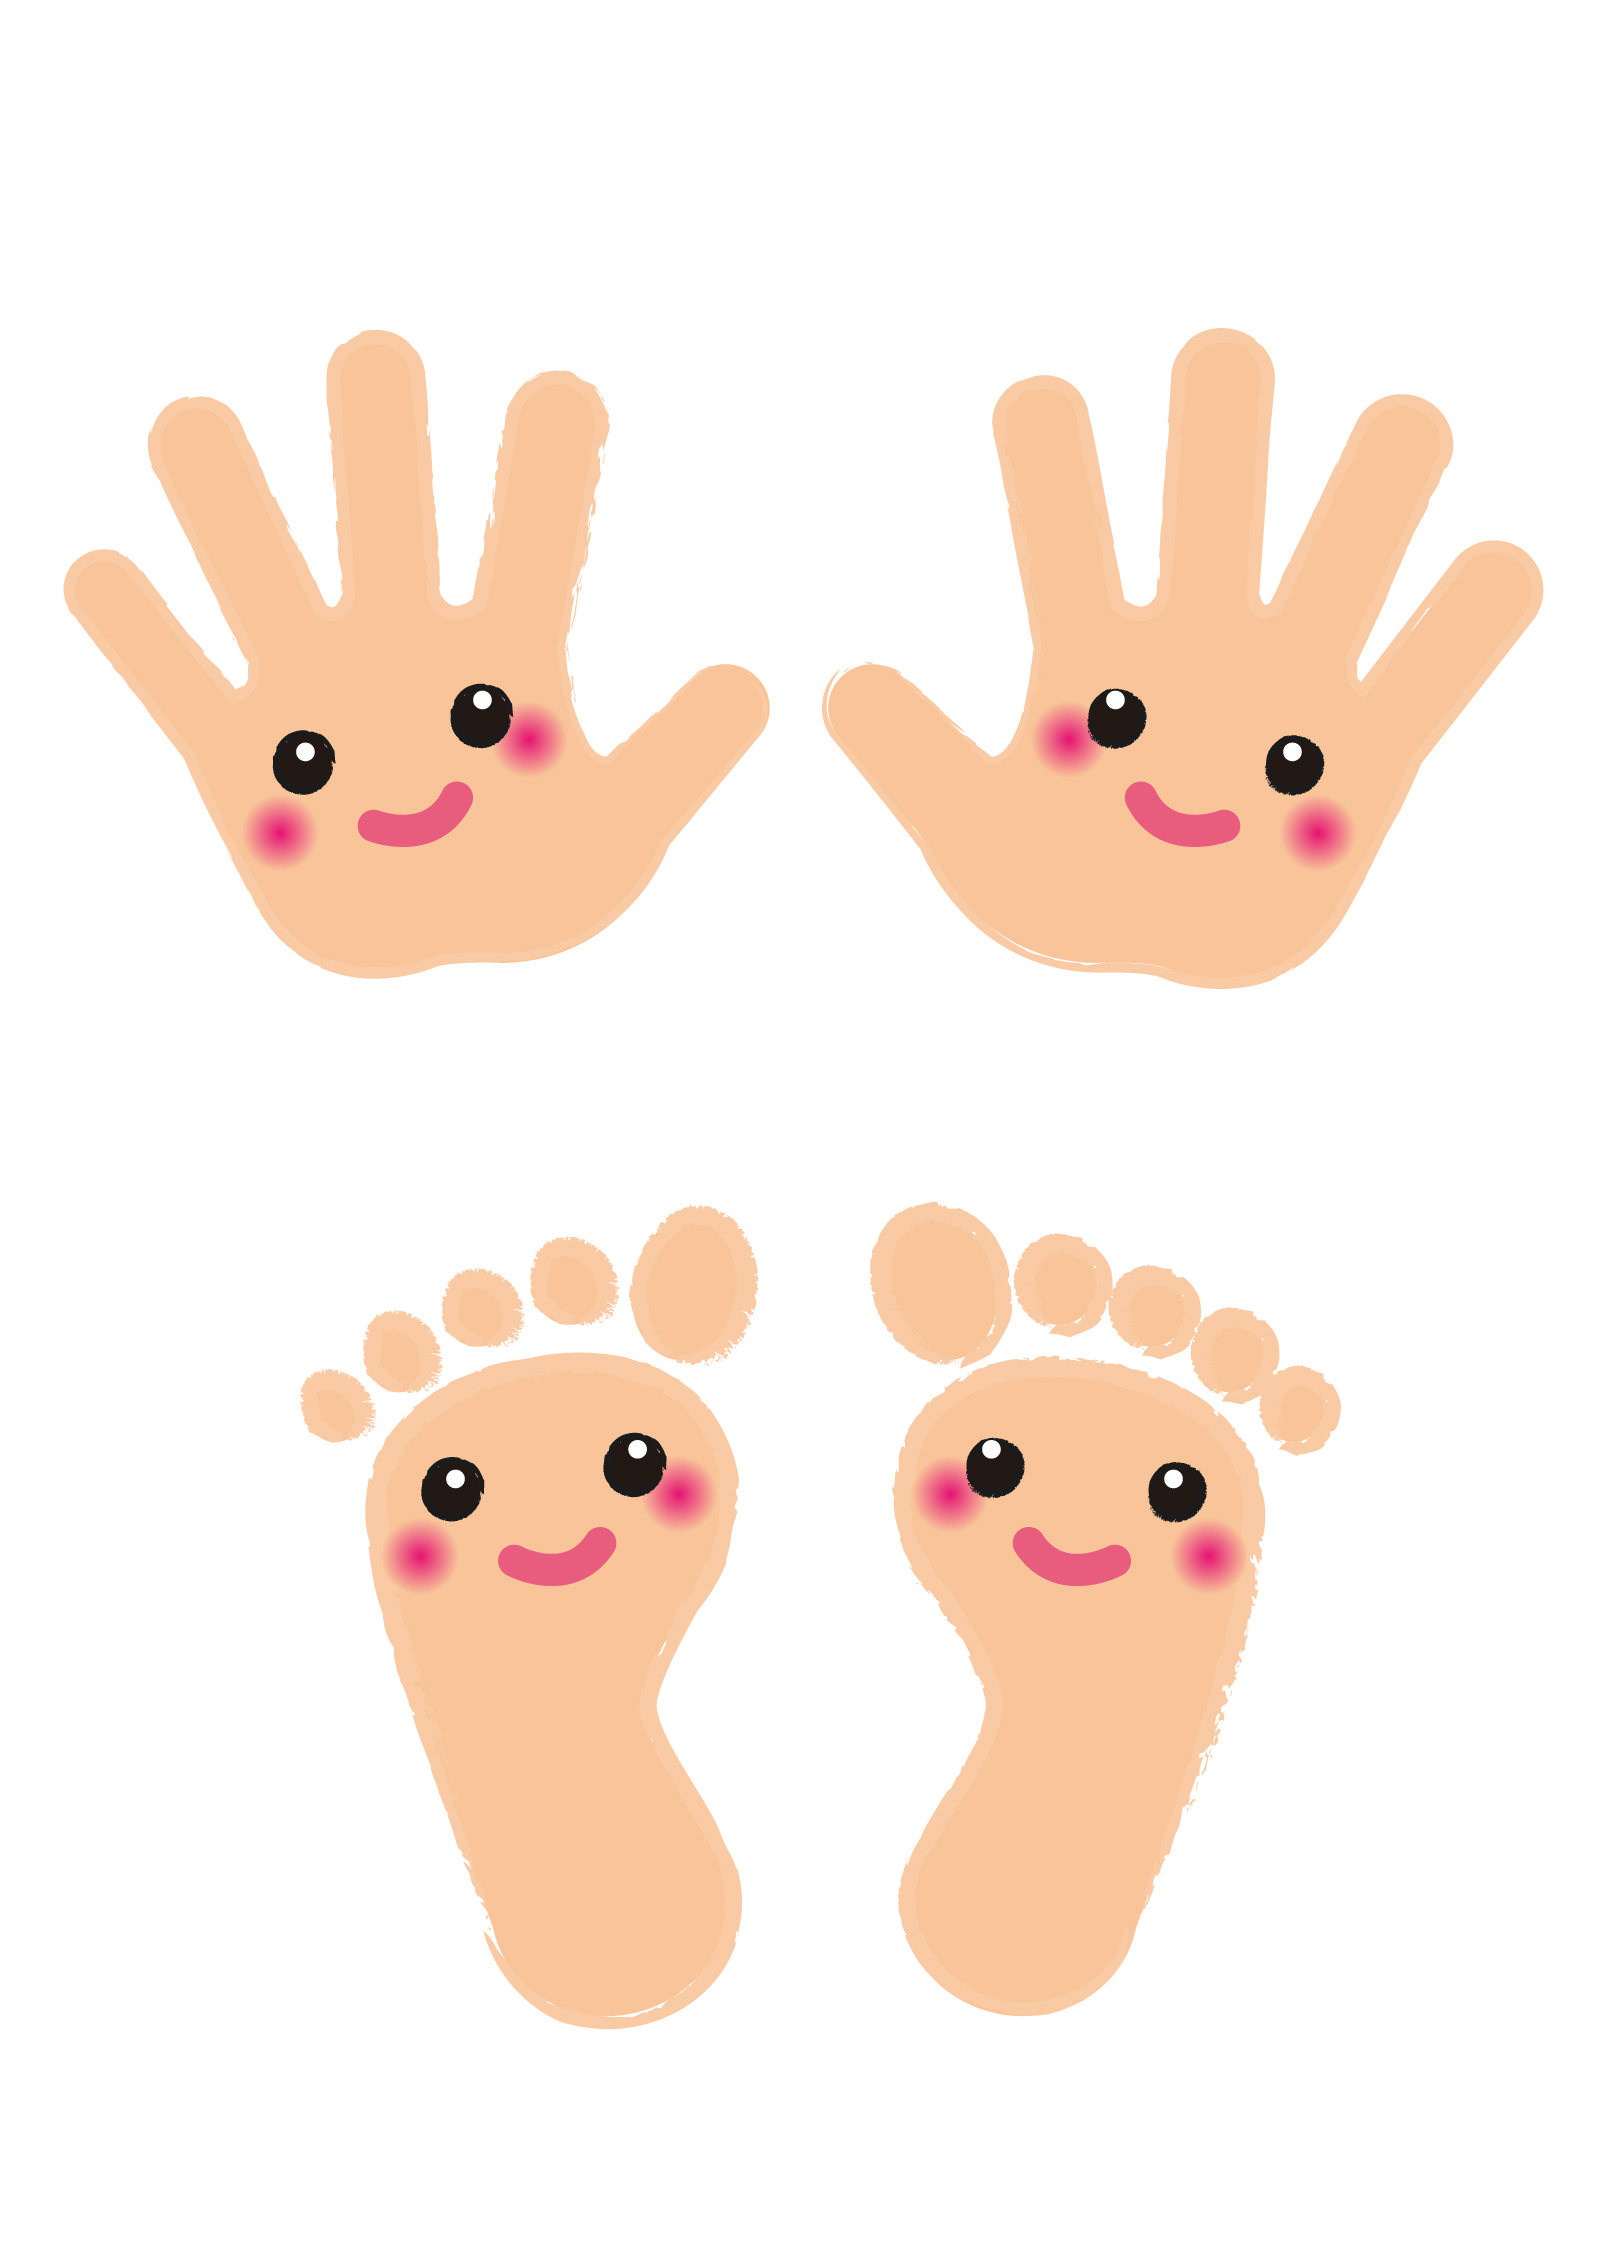 手形 足形アートやスクラップブッキングなどのワークショップ 12月19日 Enjoy Photo Festa アクア21 滋賀のママがイベント 育児 遊び 学びを発信 シガマンマ ピースマム